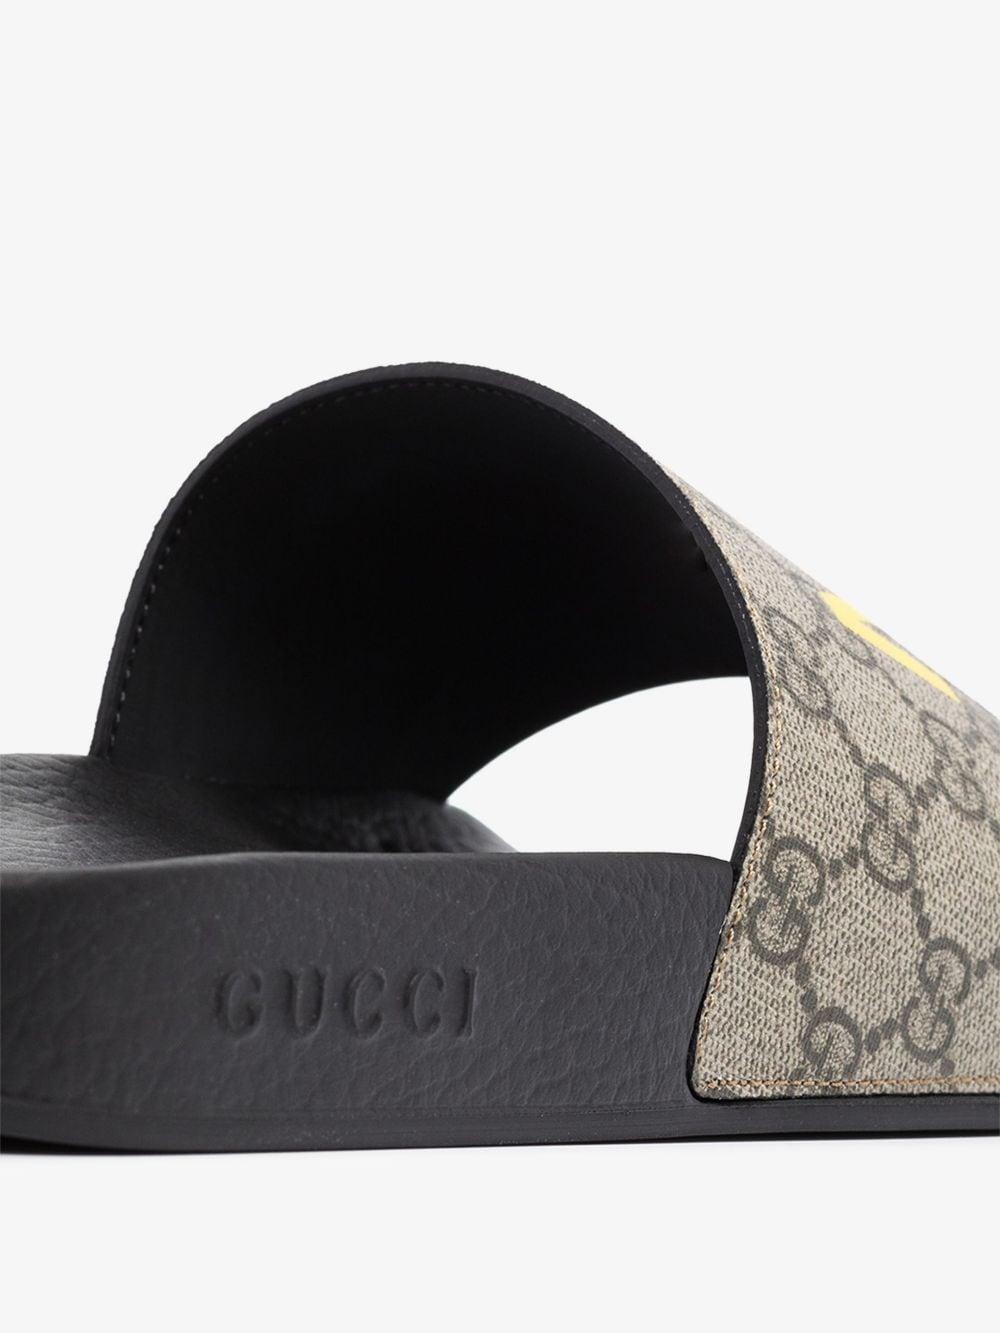 First Copy Gucci Jolie GG Sandals